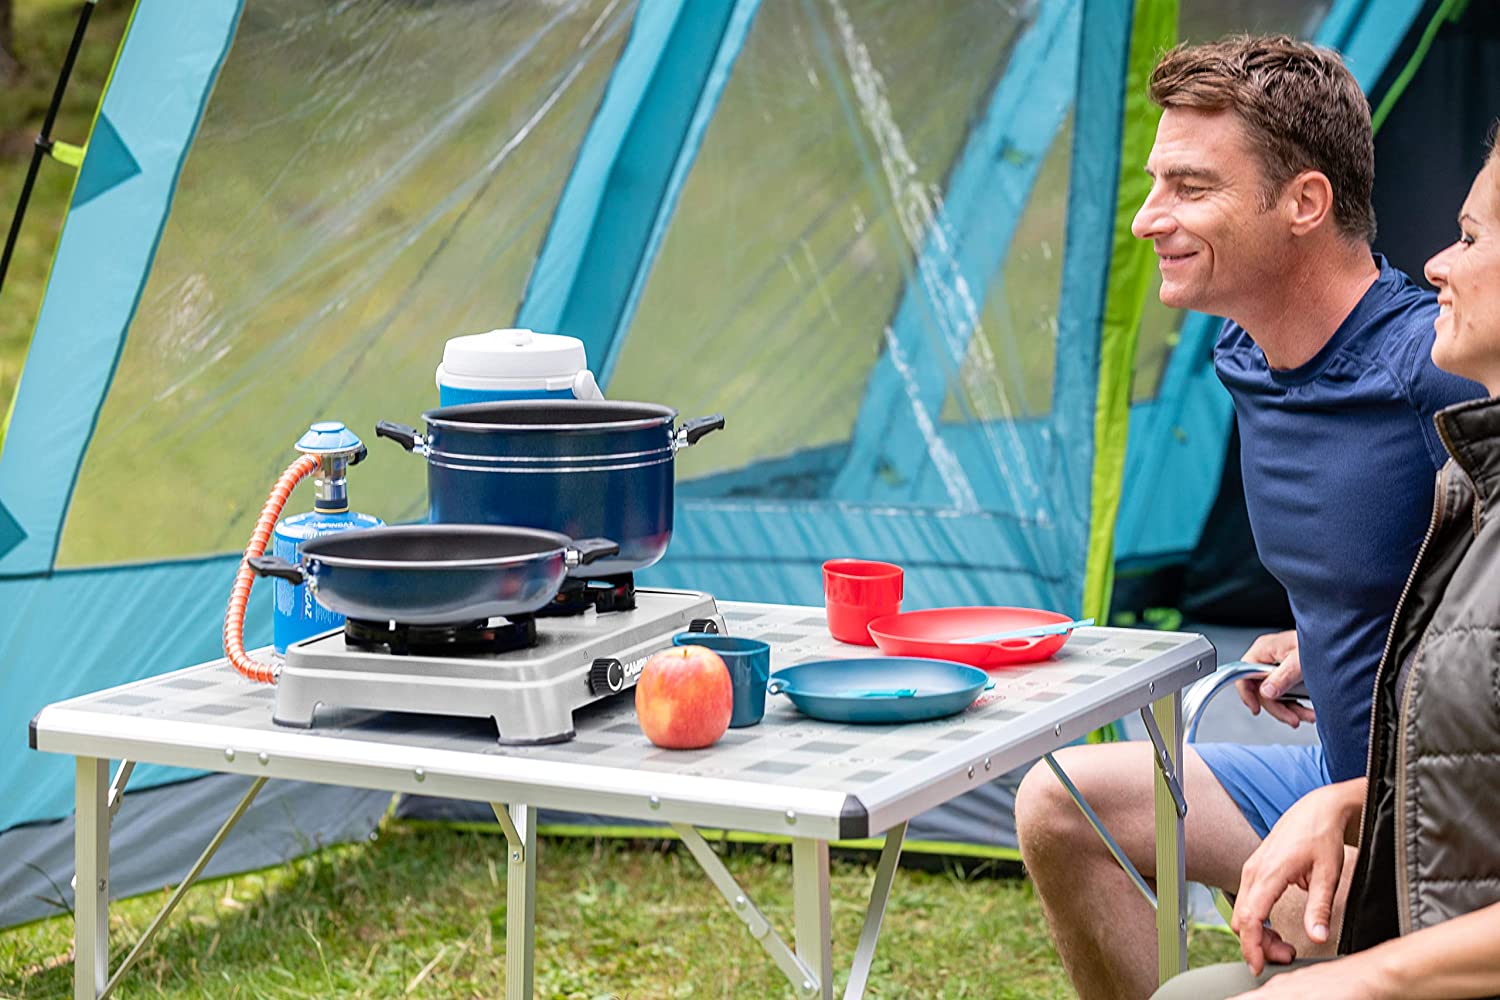 Cocina gas portátil para uso inteiror 1 fogón - Cocina camping